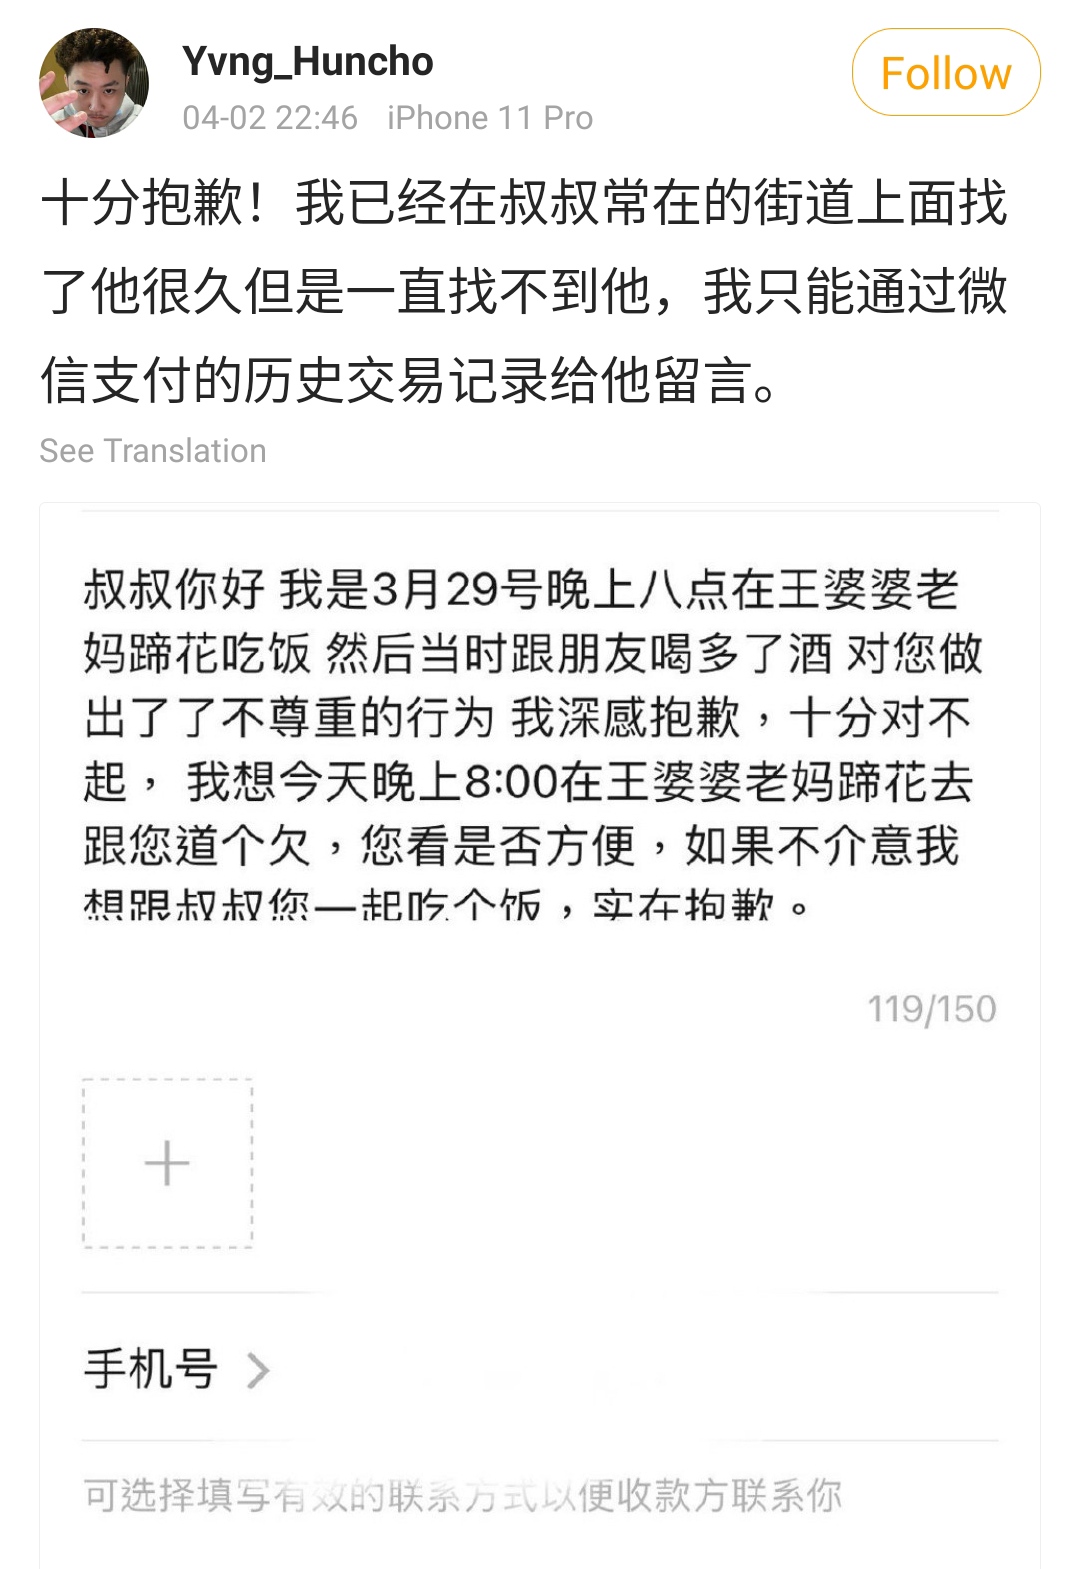 Yvng Huncho giải thích mình đã nhắn tin WeChat để xin lỗi người đàn ông bị mình xúc phạm vì thể ...